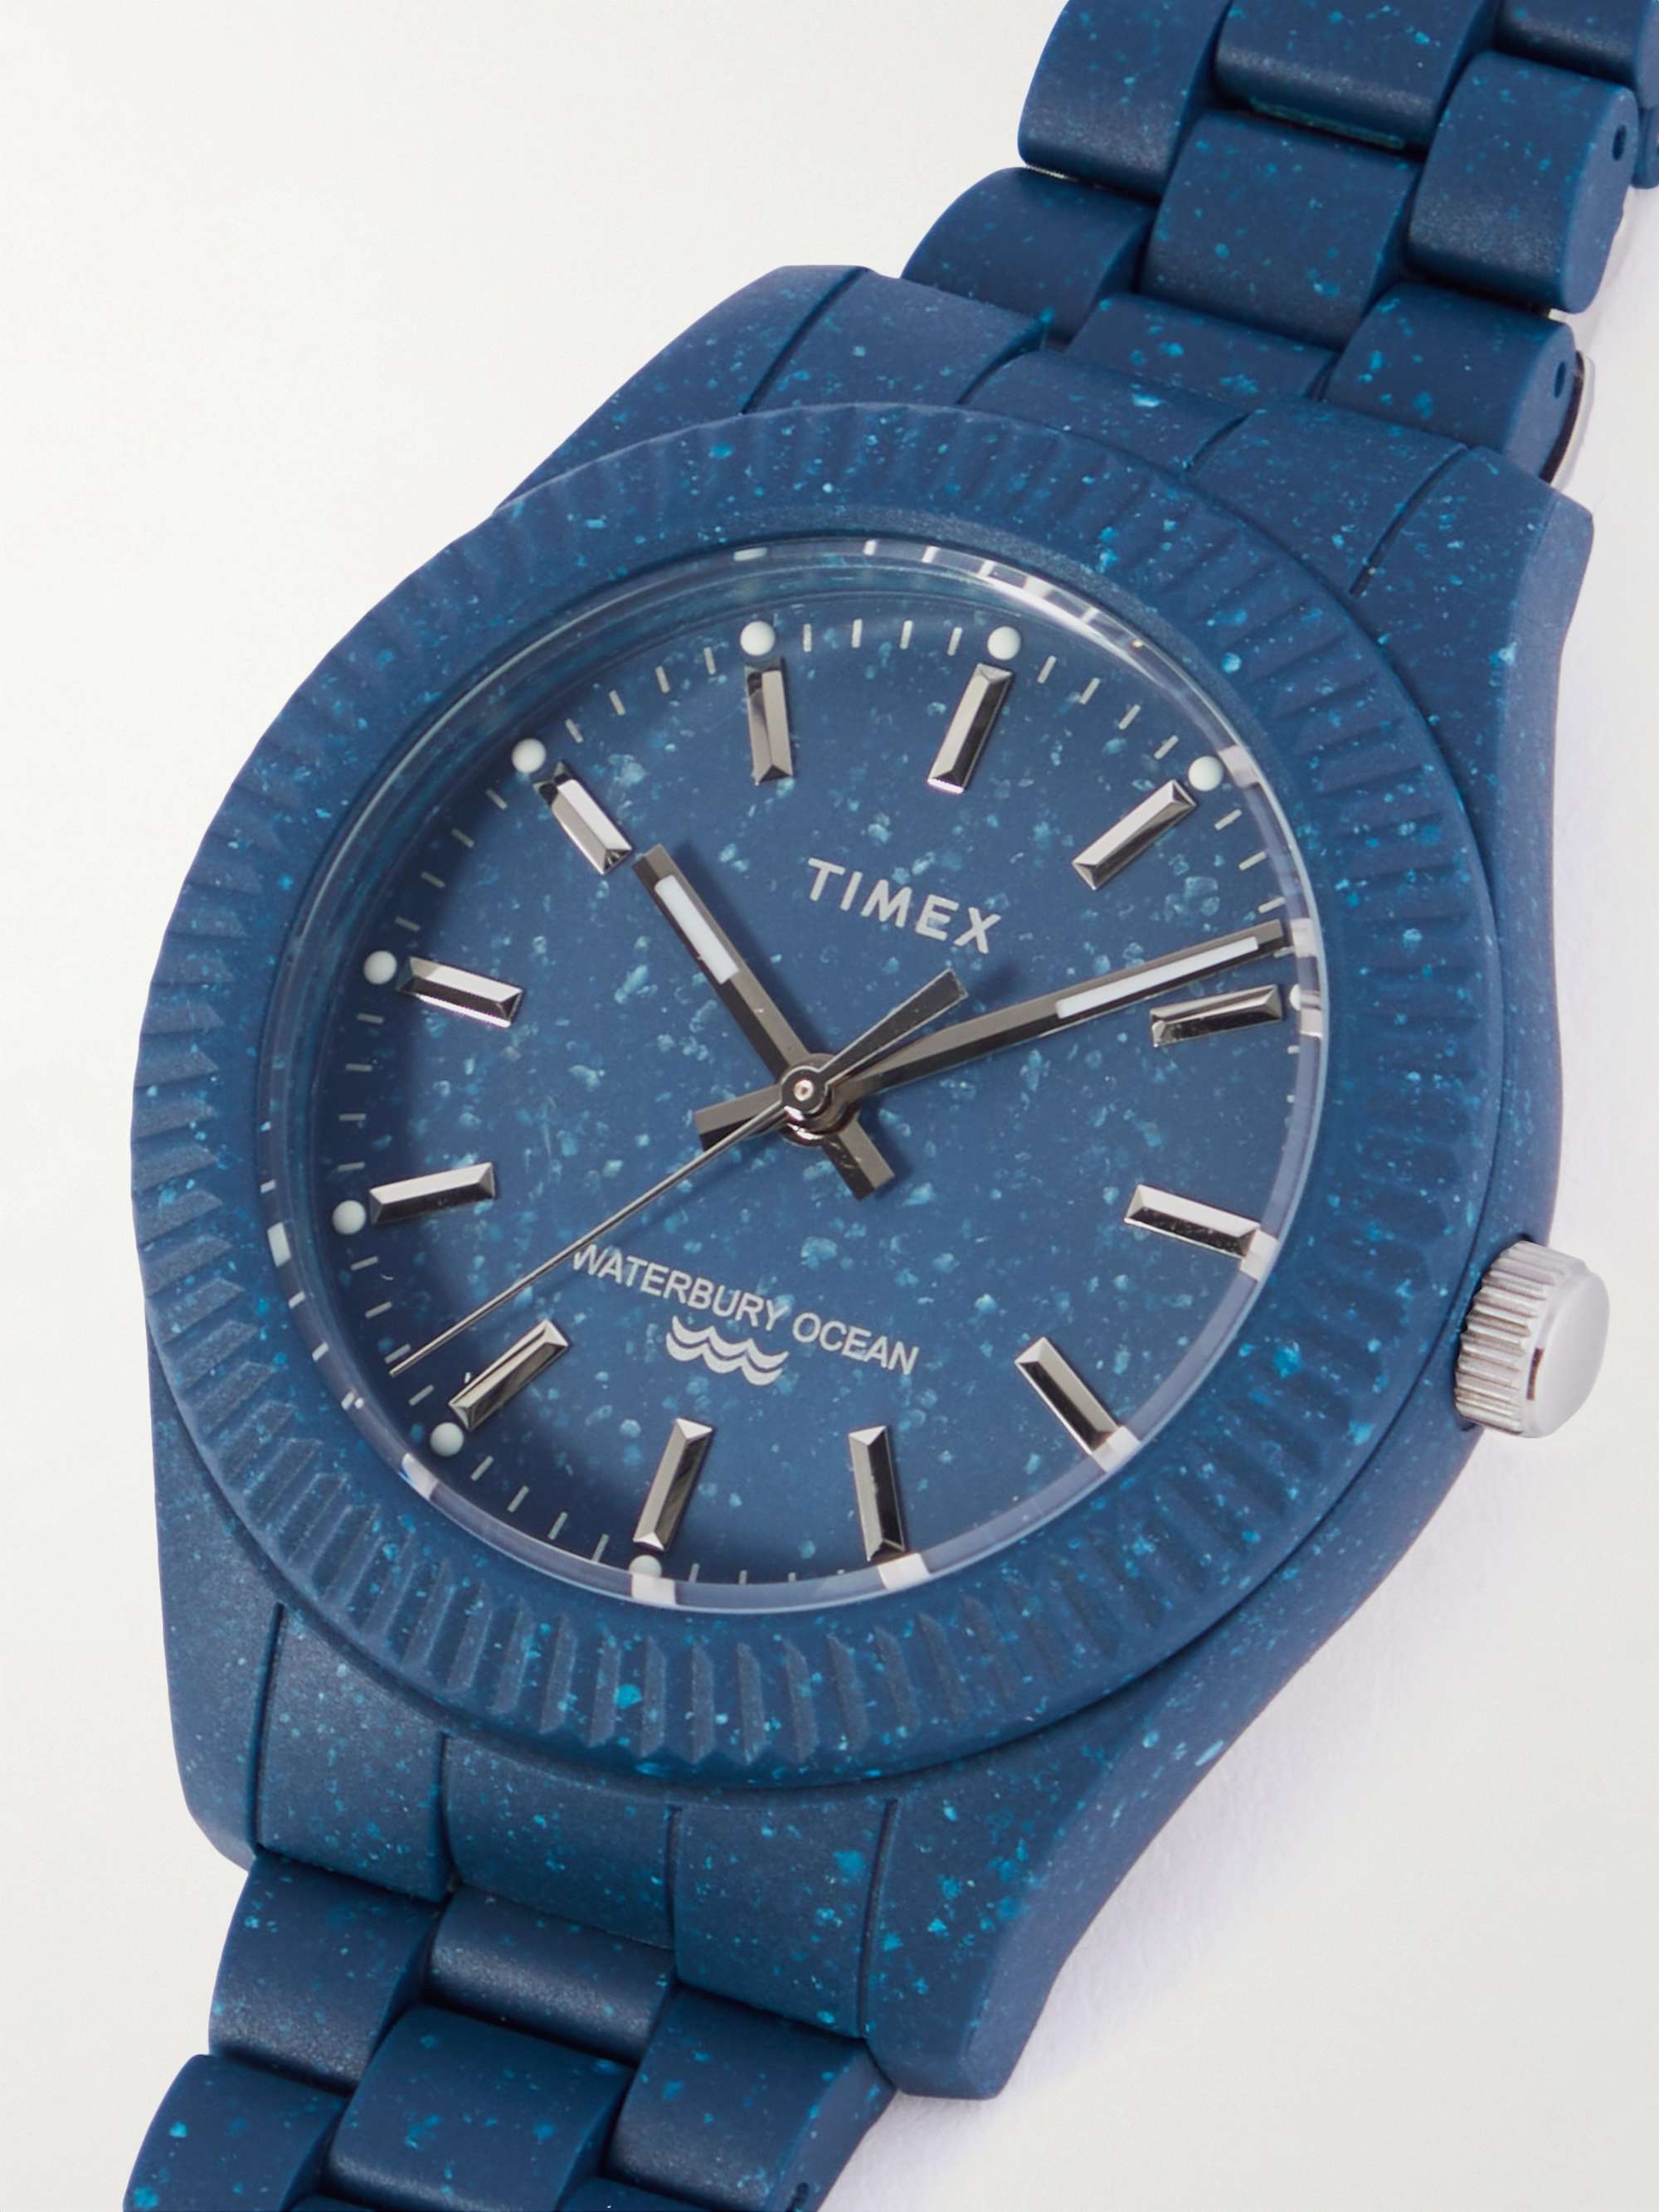 TIMEX Waterbury Ocean 42mm #tide ocean material™ Watch